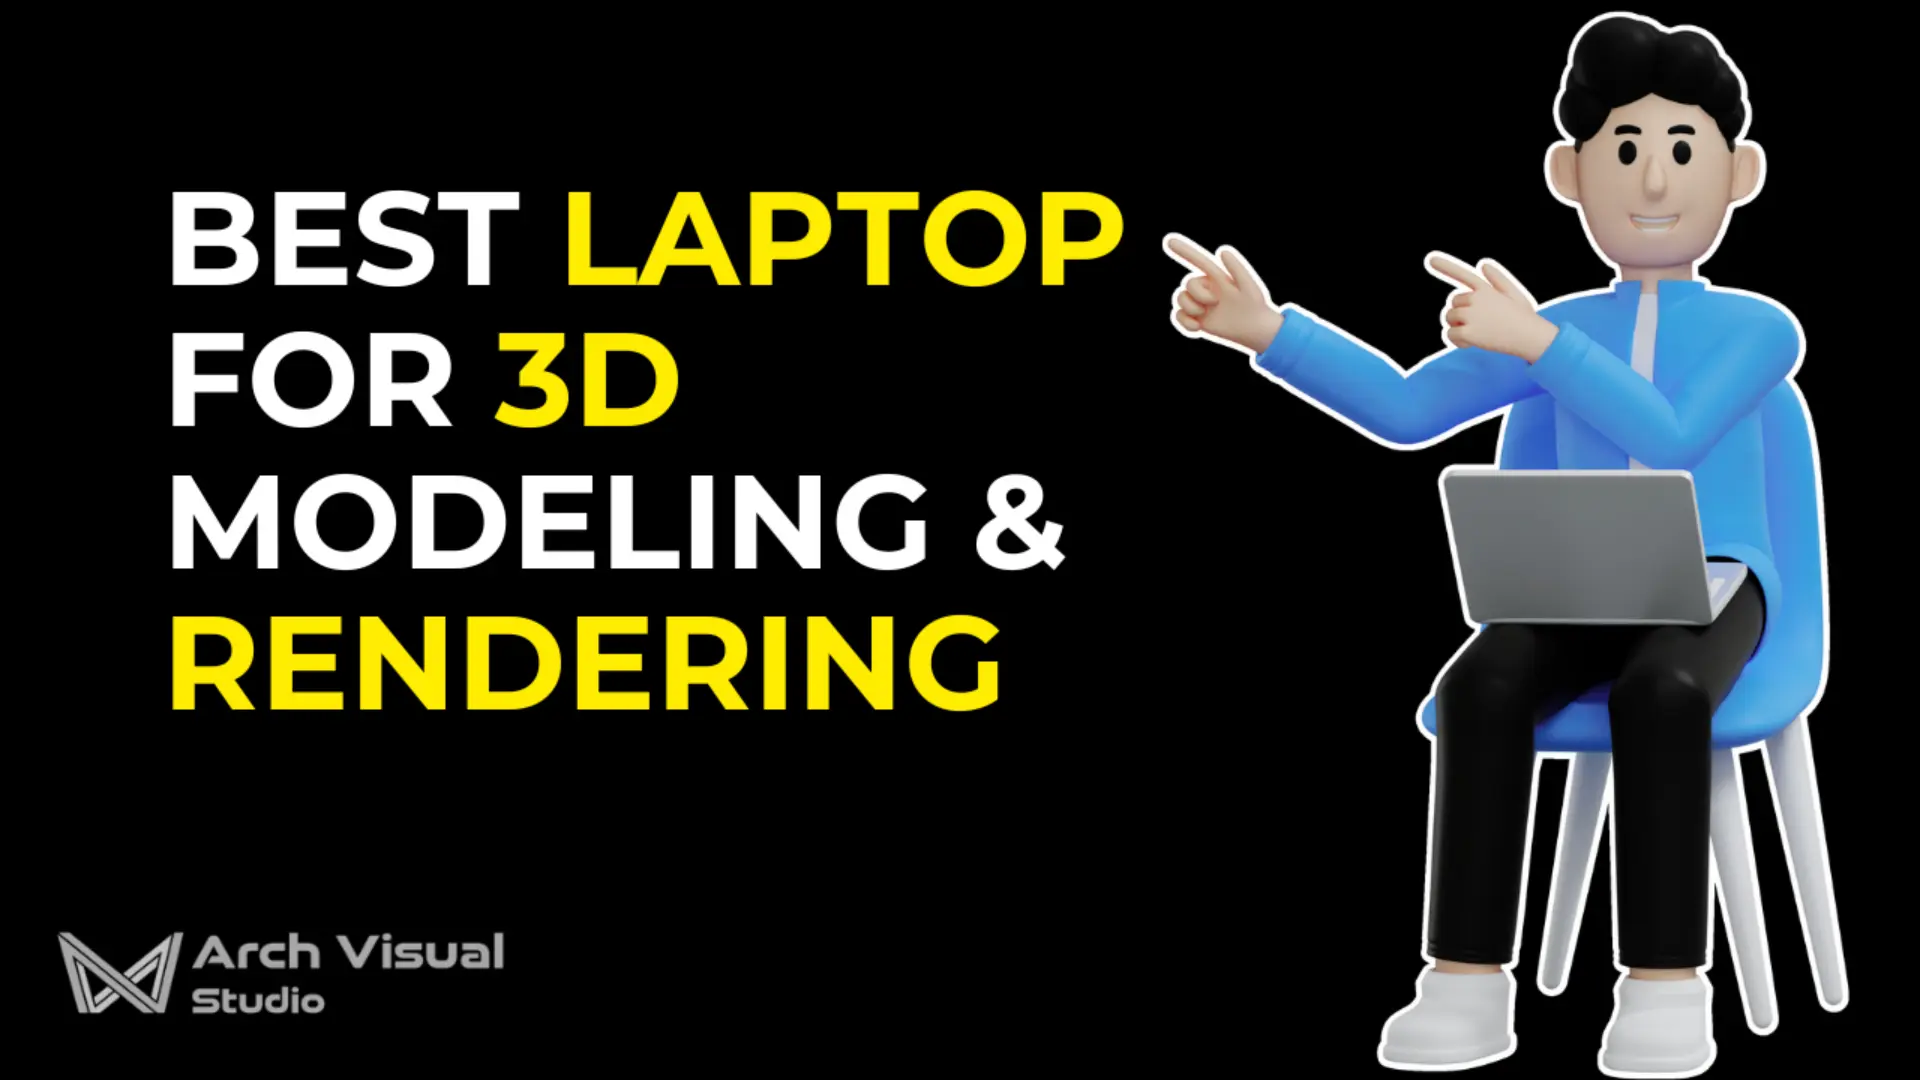 Best laptop for 3d modeling & rendering